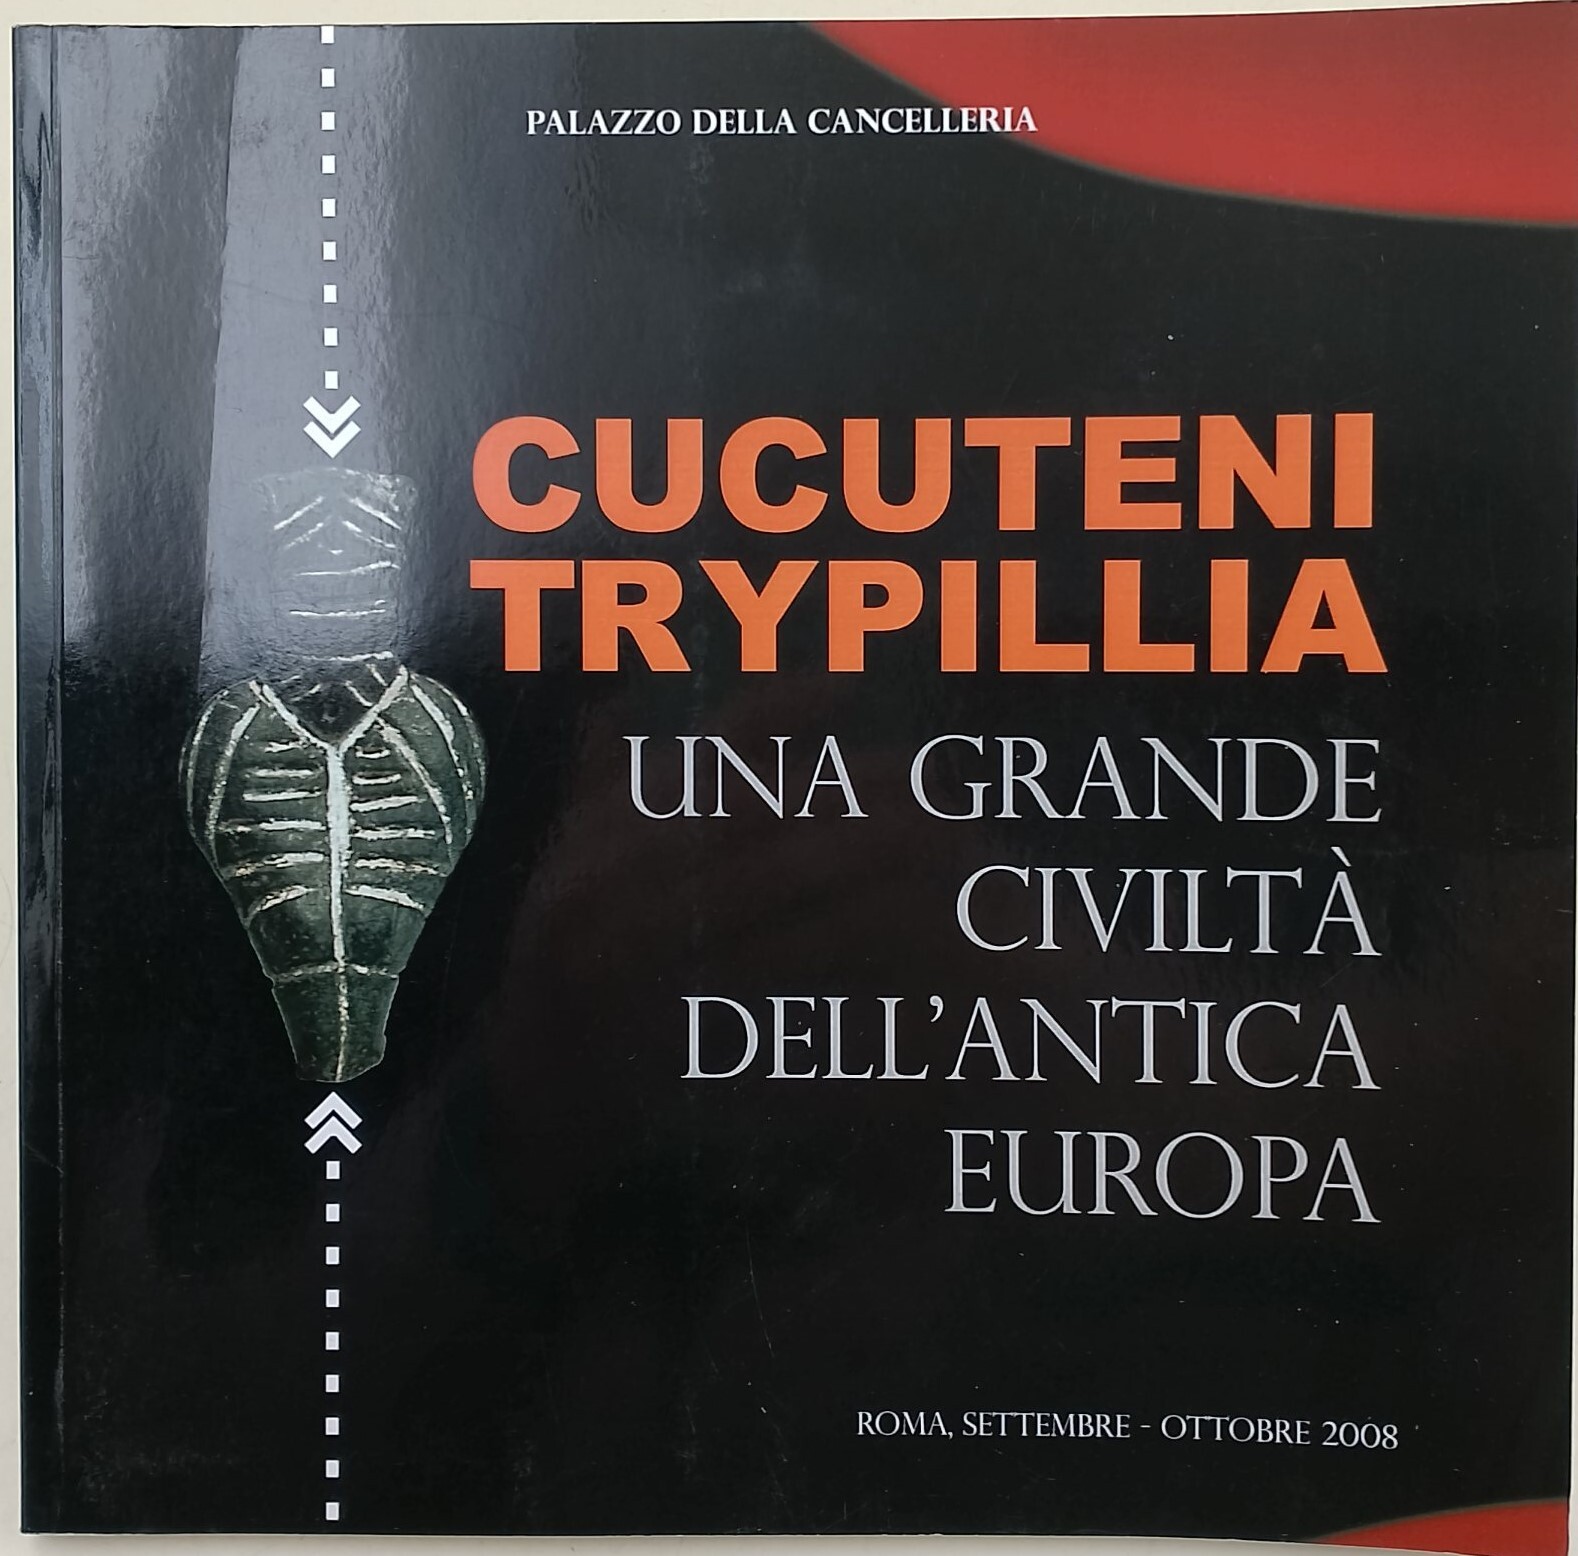 Cucuteni Trypillia - una grande civilta' dell'antica europa